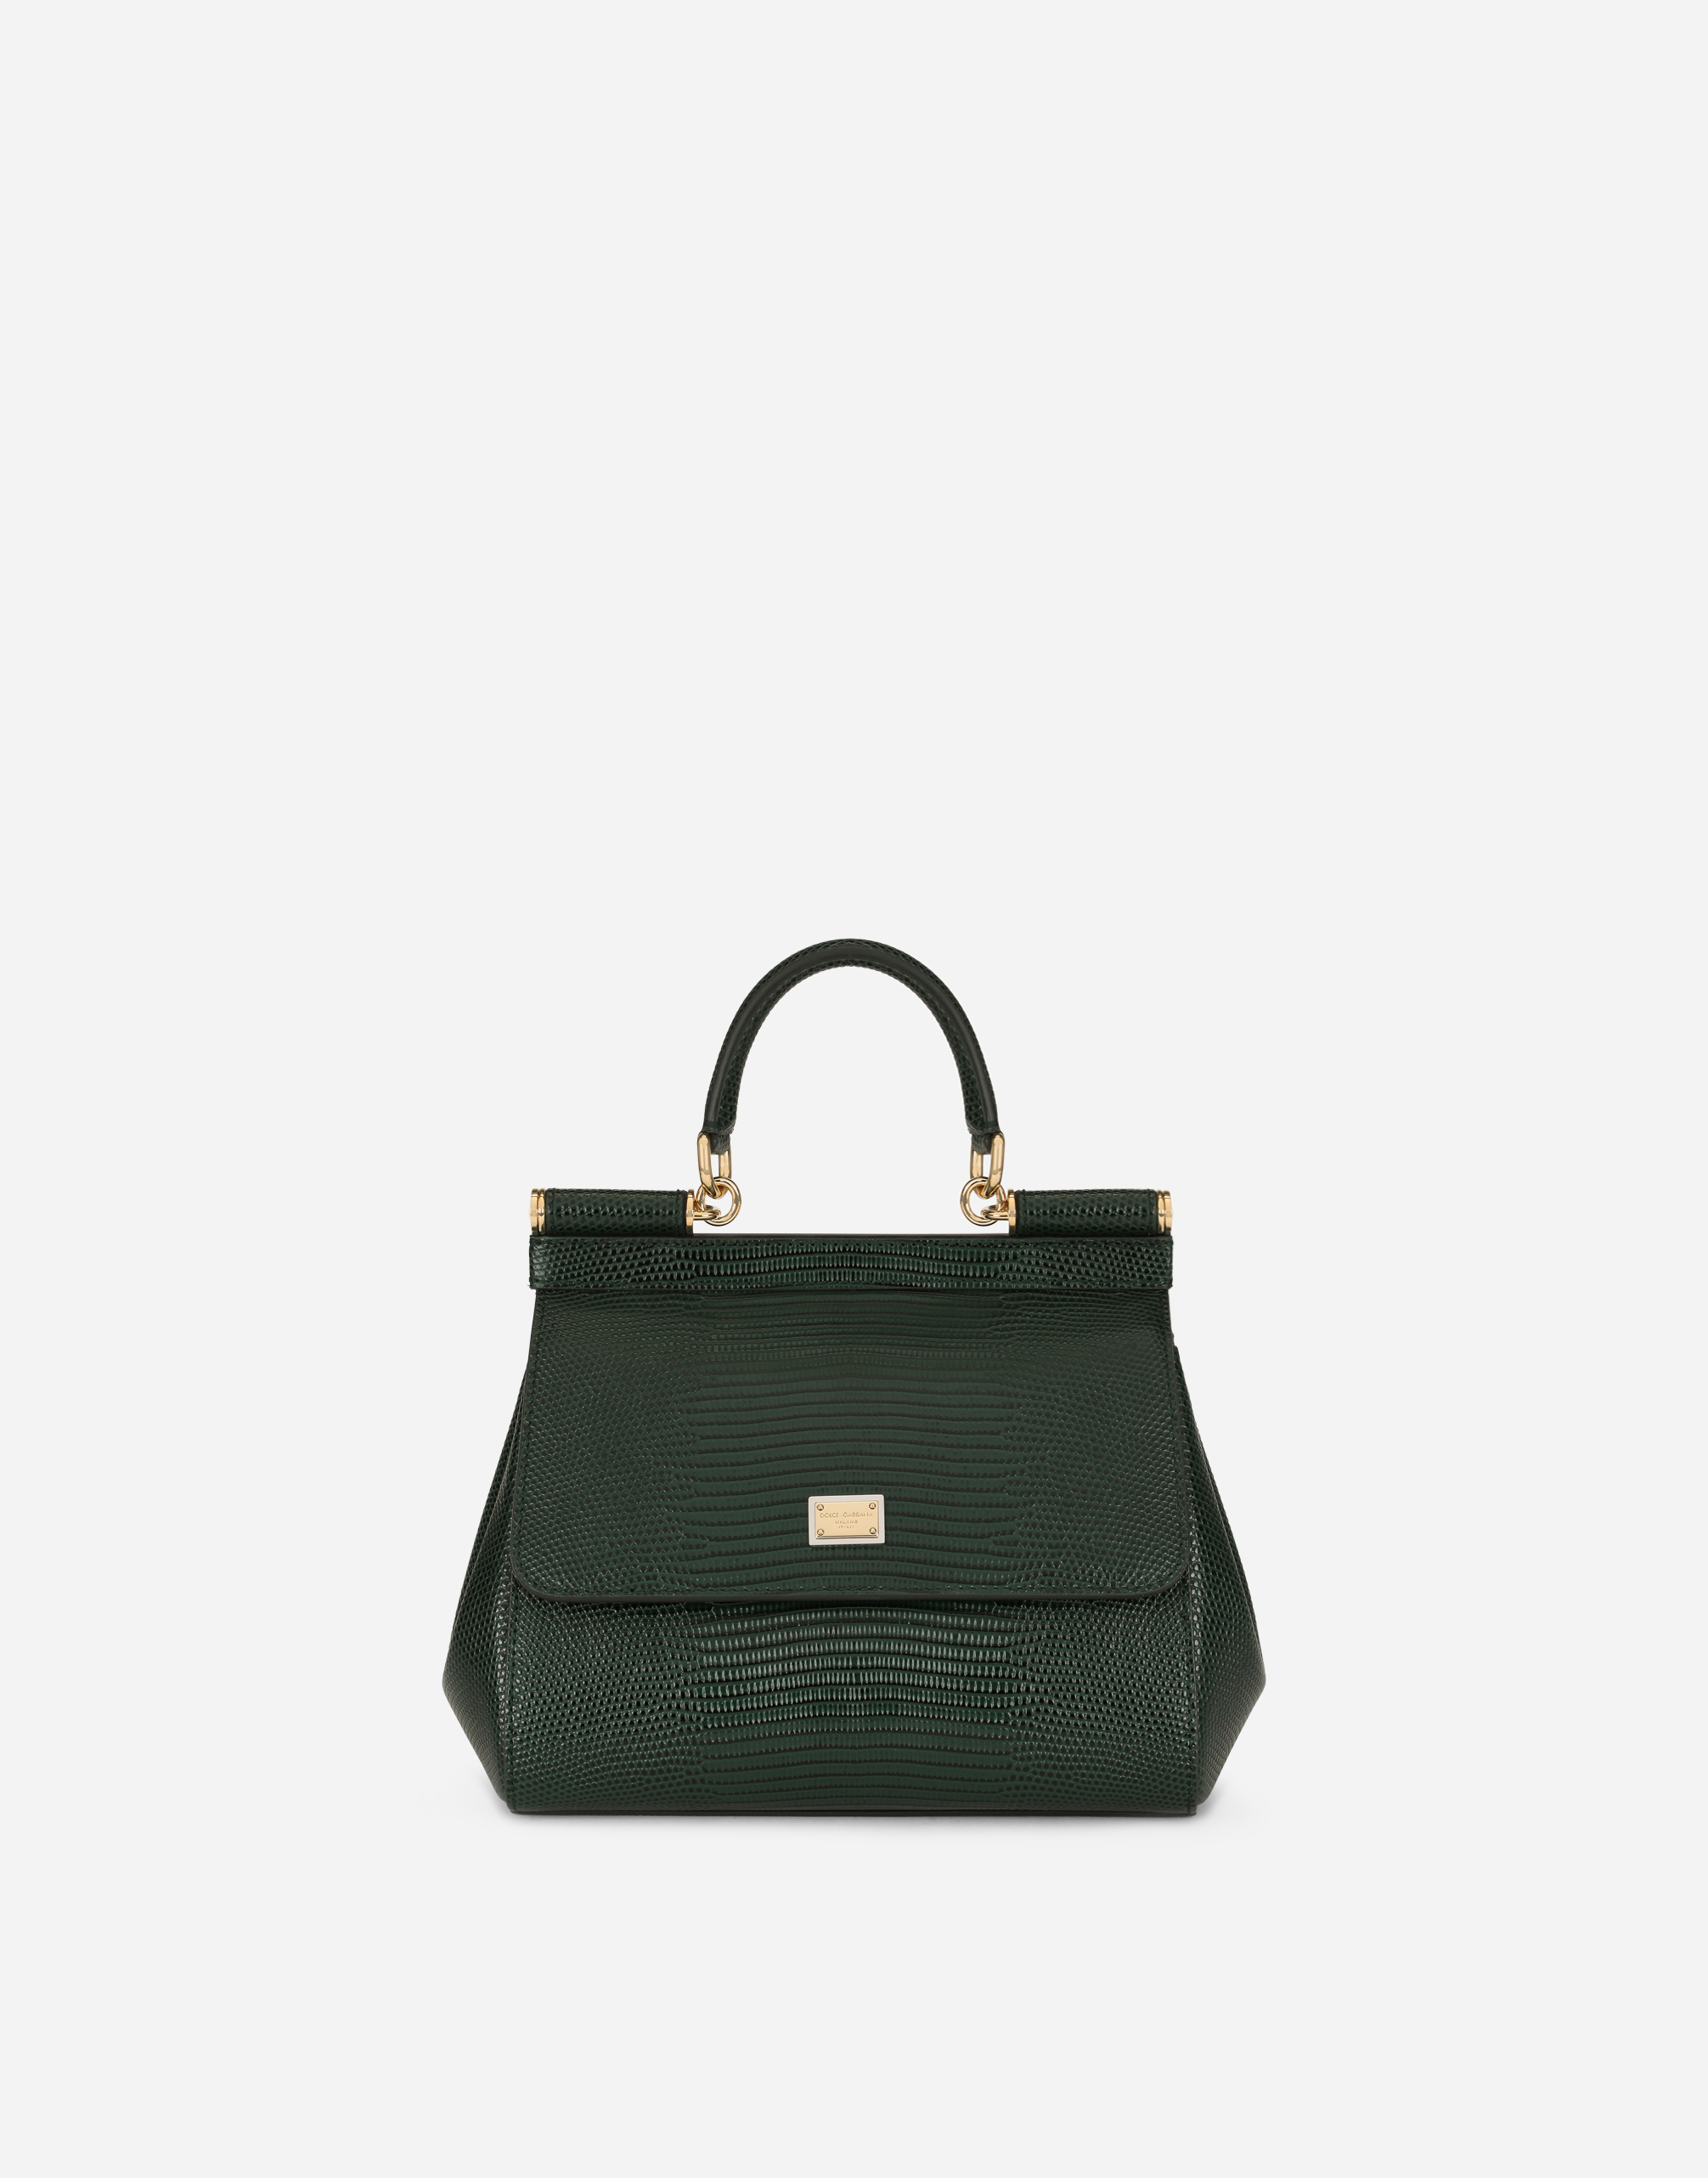 Medium Sicily handbag in Green